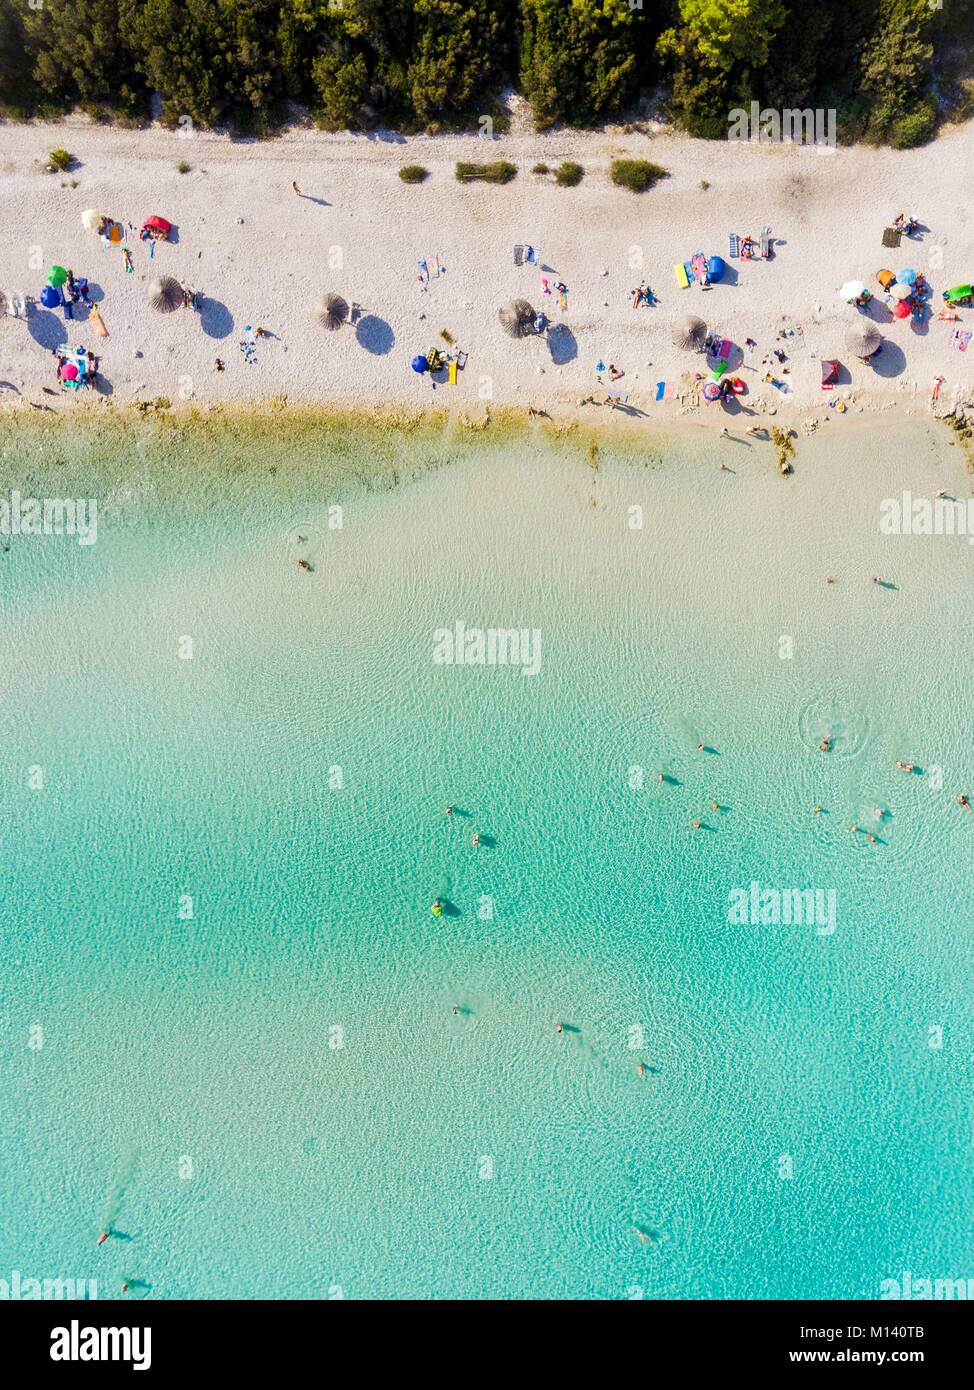 Kroatien, Dalmatien, Dalmatinischen Küste, Zadar, Insel Dugi Otok, Sakarun Strand (Luftbild) Stockfoto